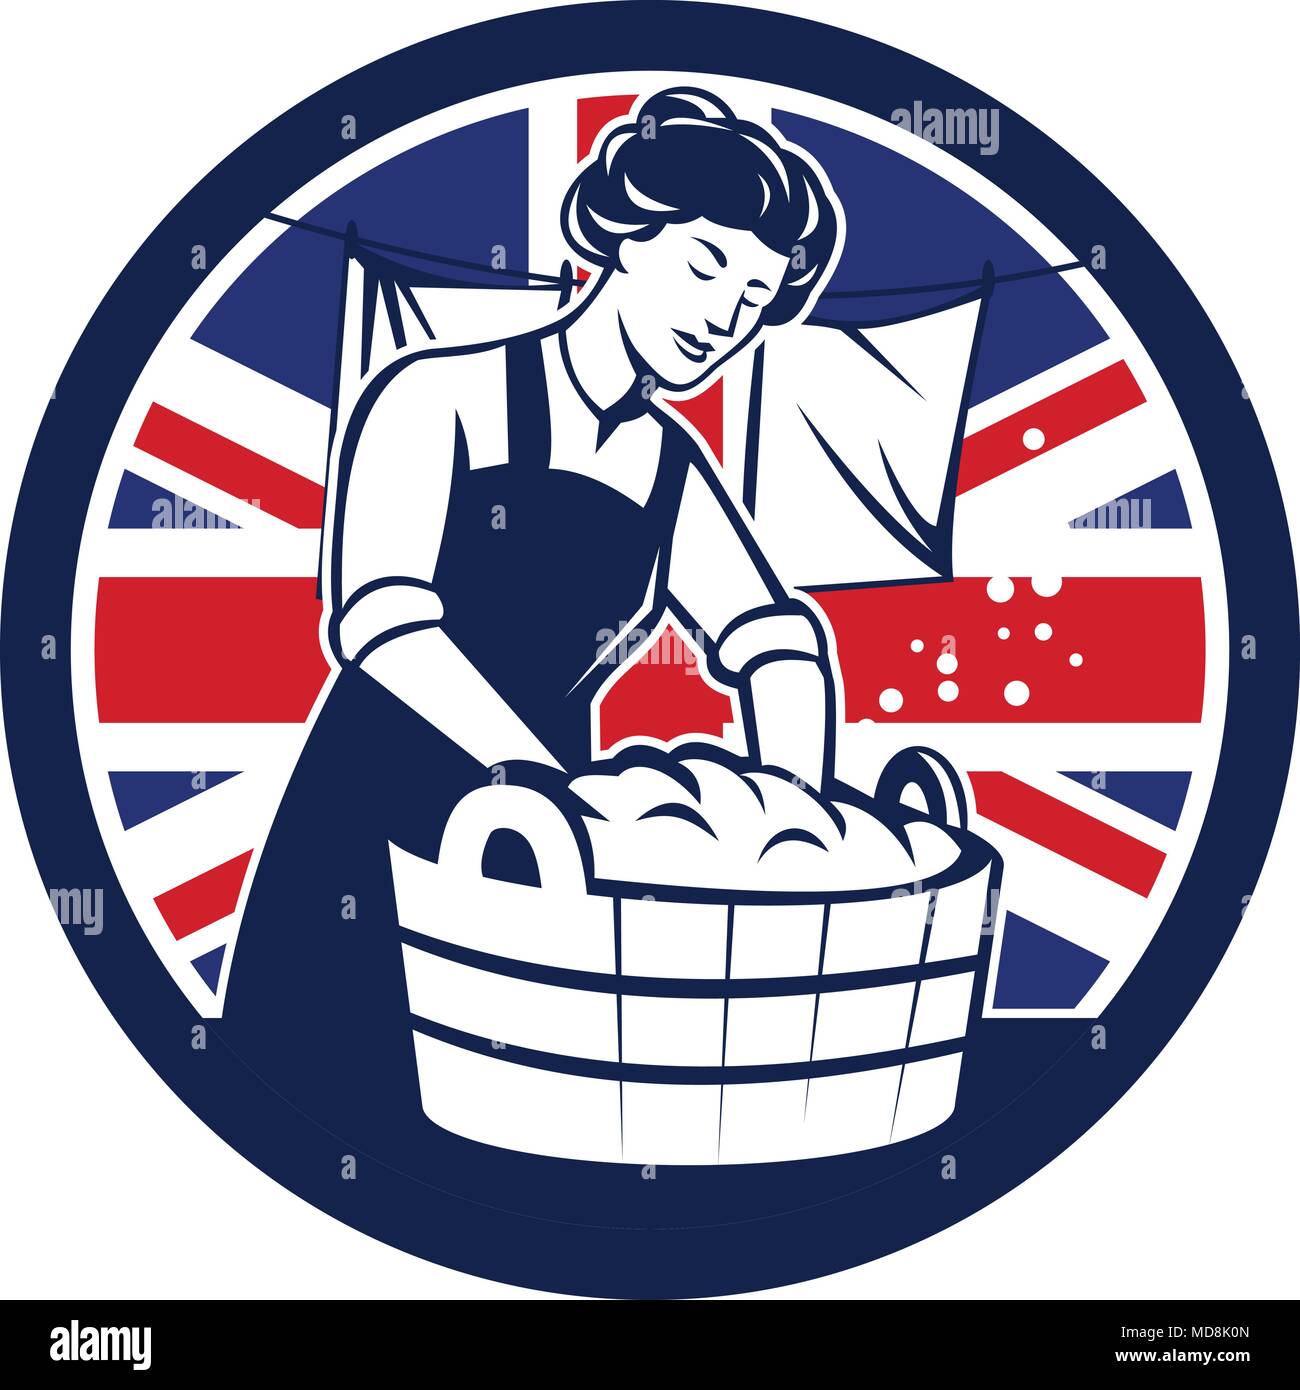 Icon retro style illustration of a vintage British housewife washing laundry with United Kingdom UK, Great Britain Union Jack flag set inside circle o Stock Vector